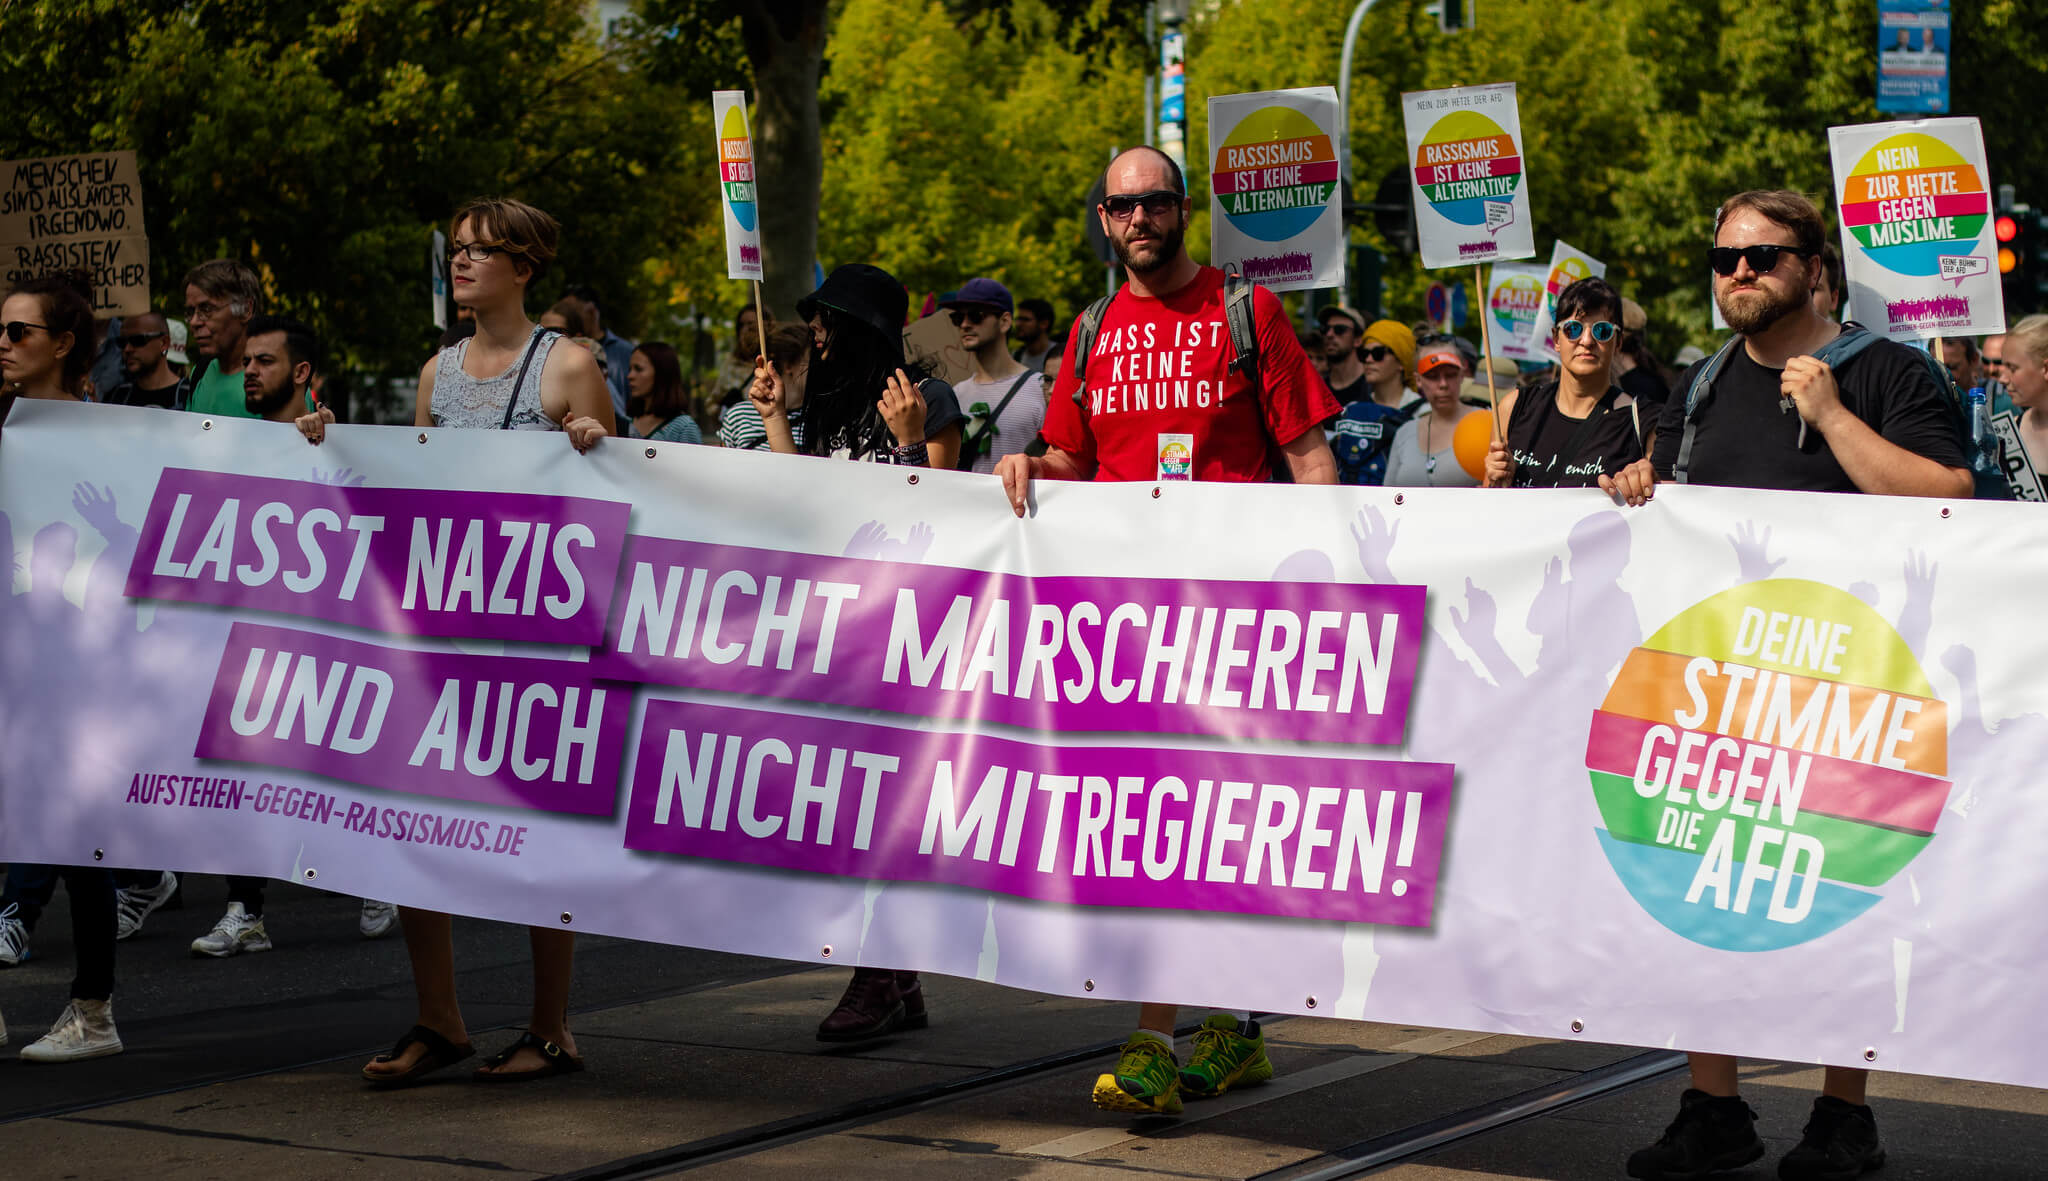 Pekelder-Demonstratie tegen racisme, discriminatie en nationalisme in Dresden op 24 augustus 2019 - Tobias Möritz - Flickr